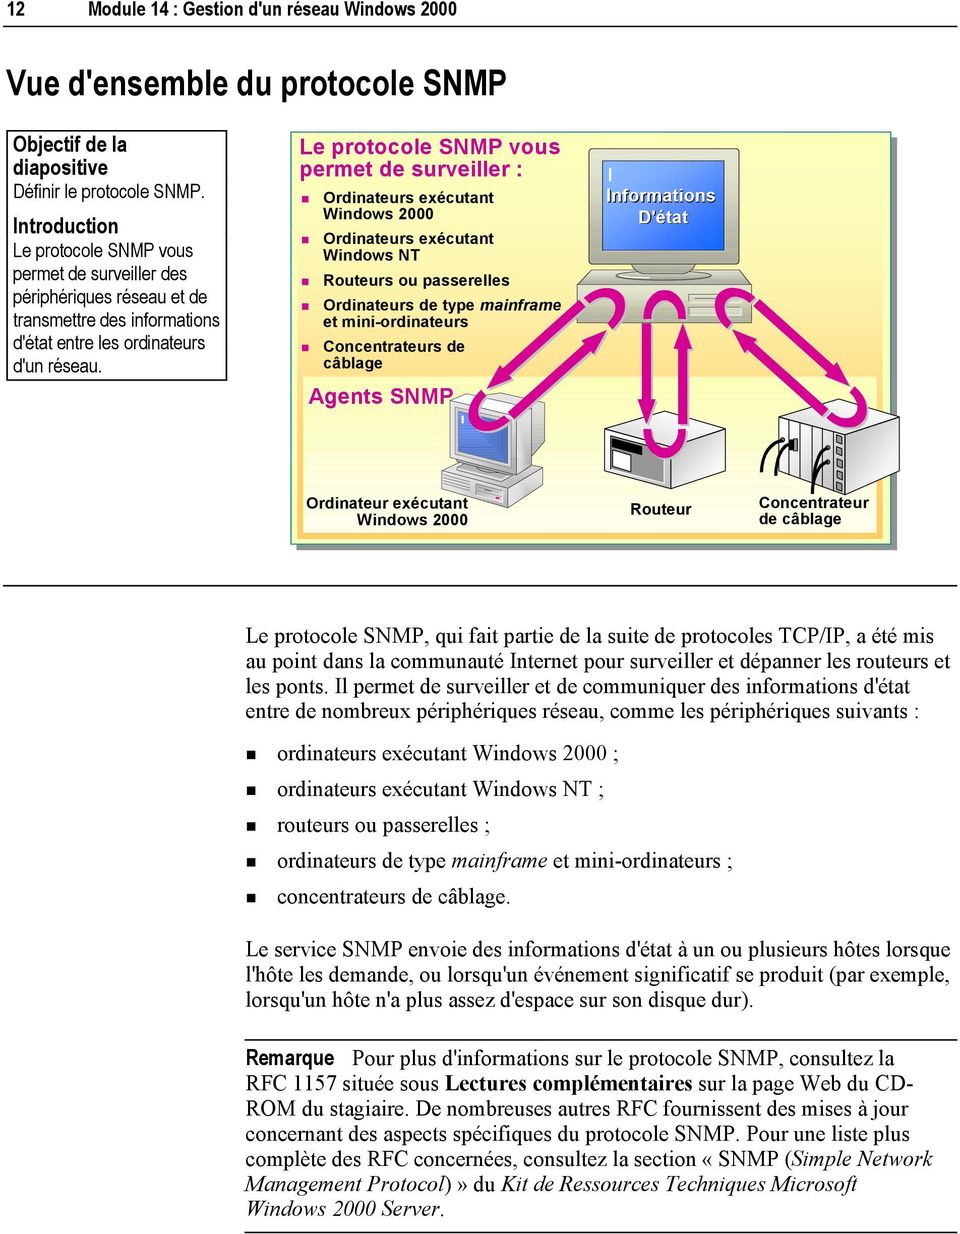 Le protocole SNMP vous permet de surveiller :! Ordinateurs exécutant Windows 2000! Ordinateurs exécutant Windows NT! Routeurs ou passerelles! Ordinateurs de type mainframe et mini-ordinateurs!